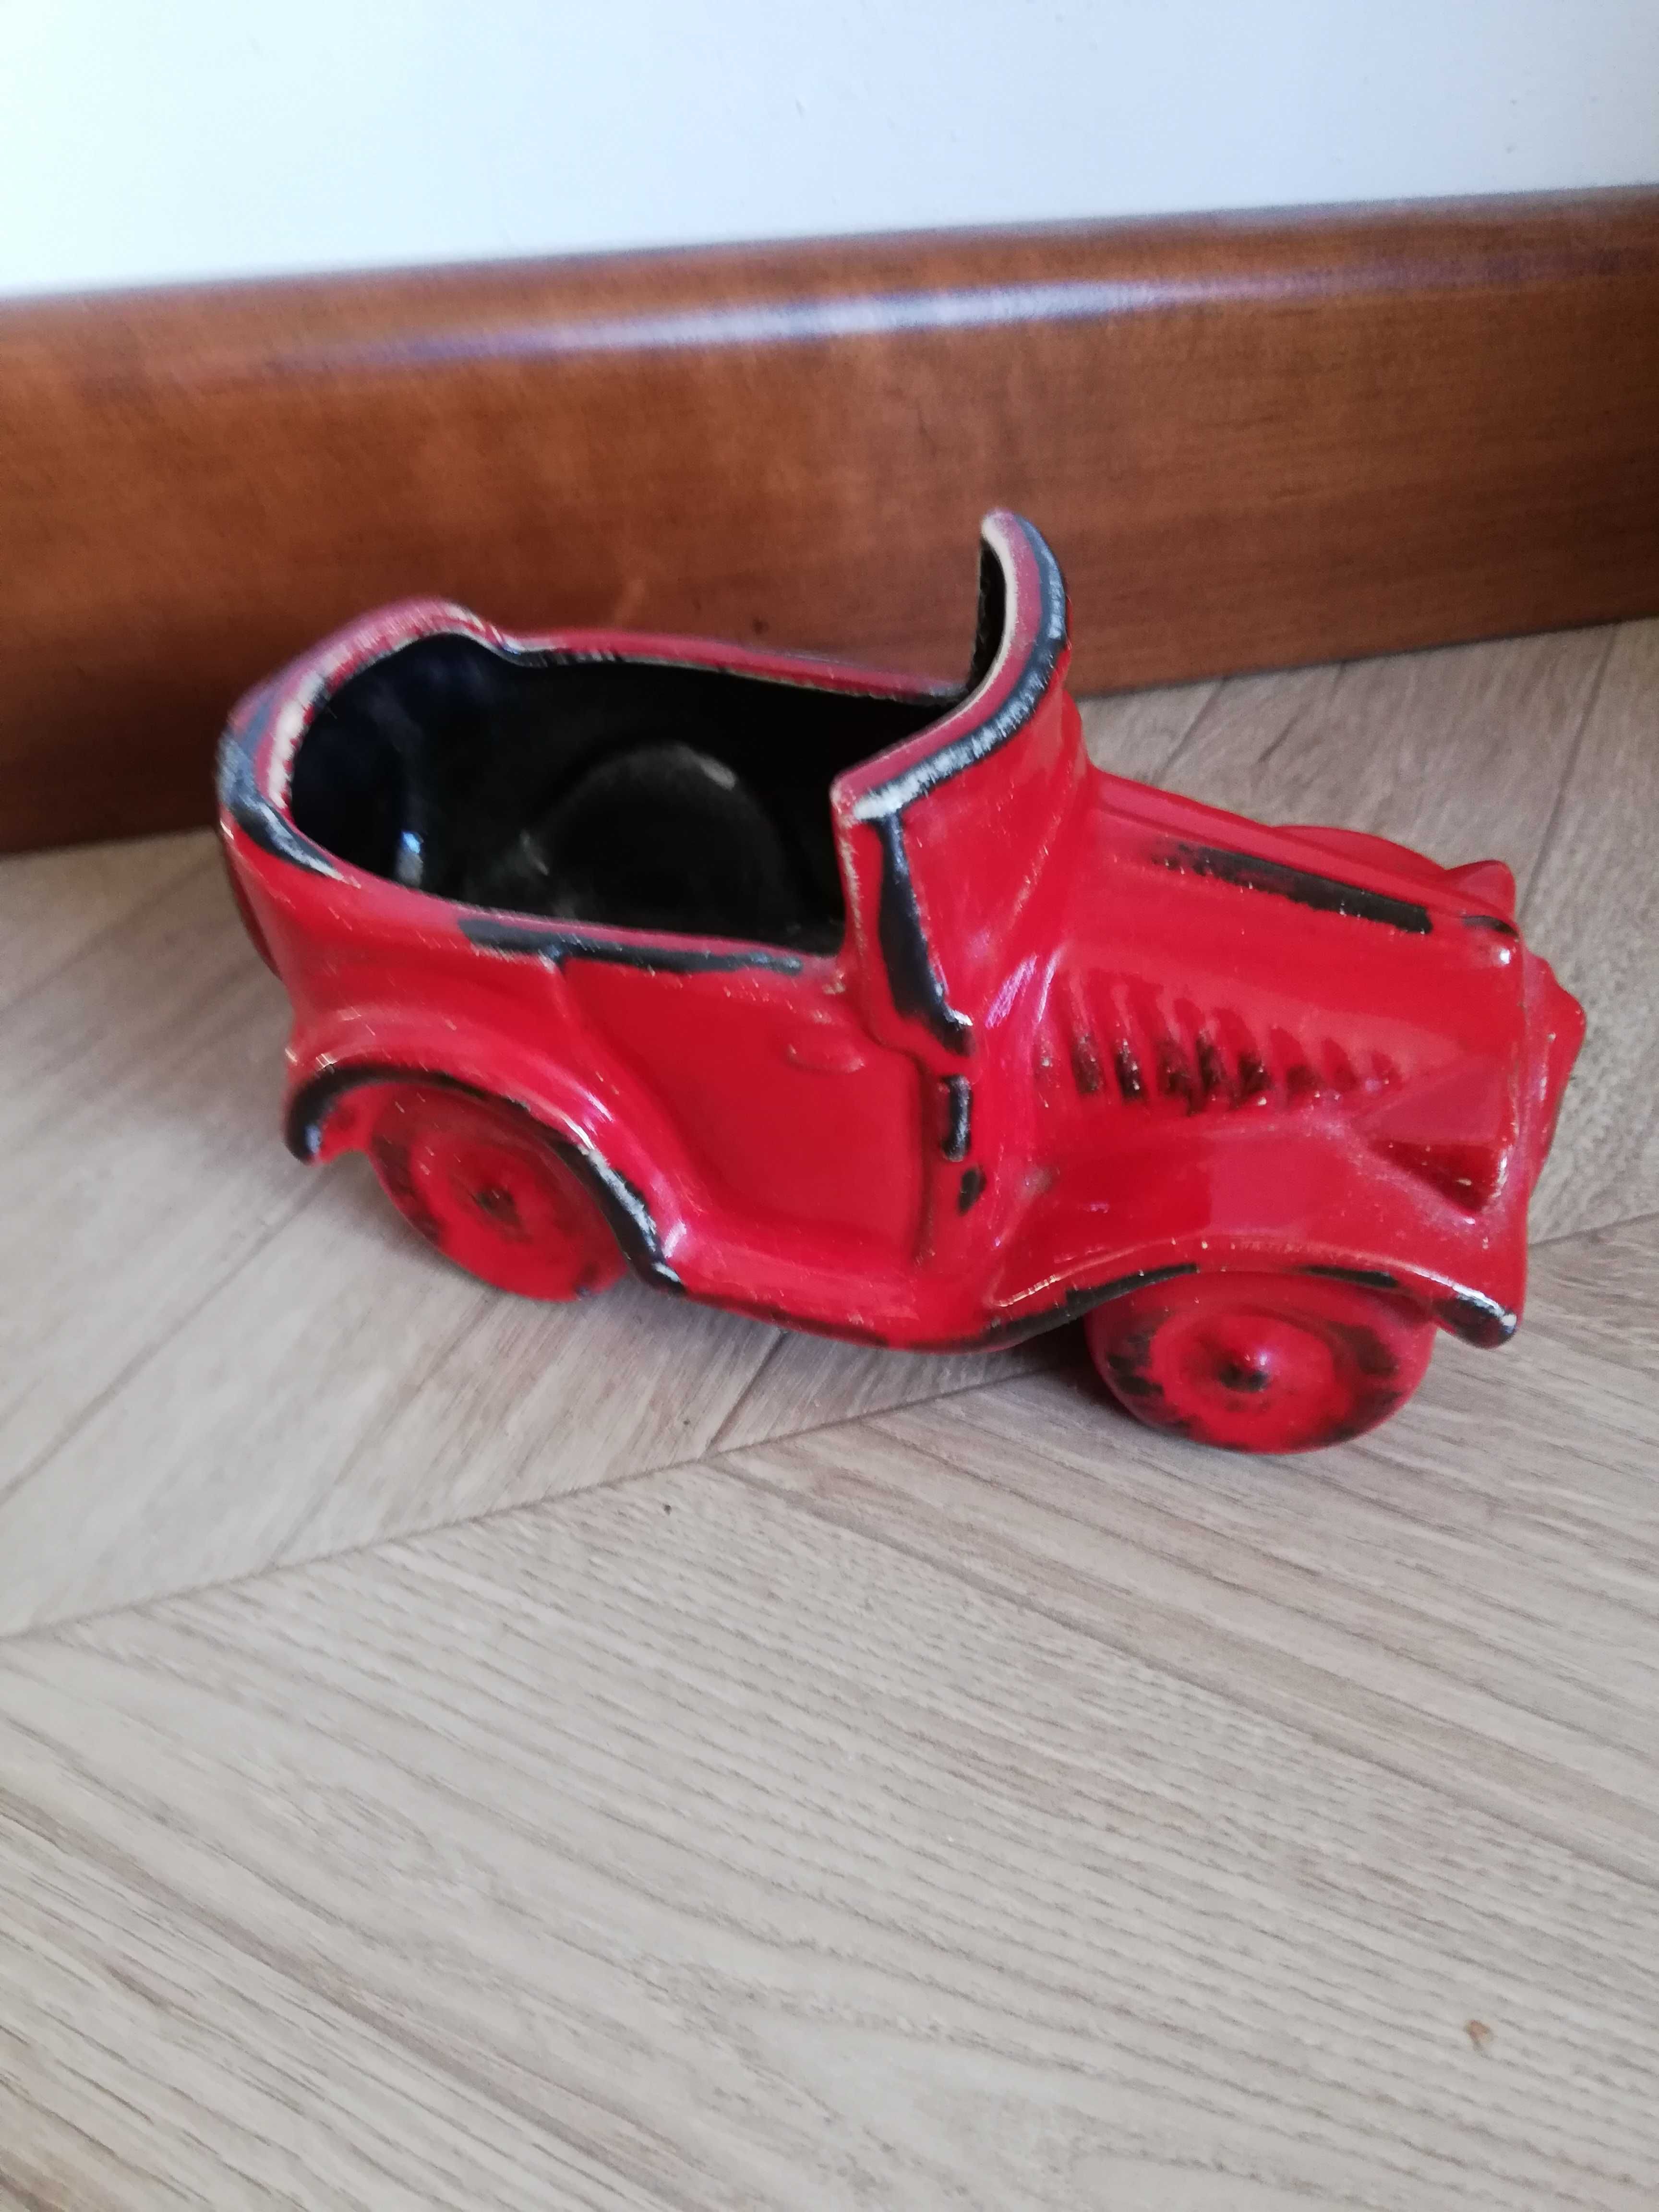 Pojemnik czerwony samochód ceramiczny doniczka